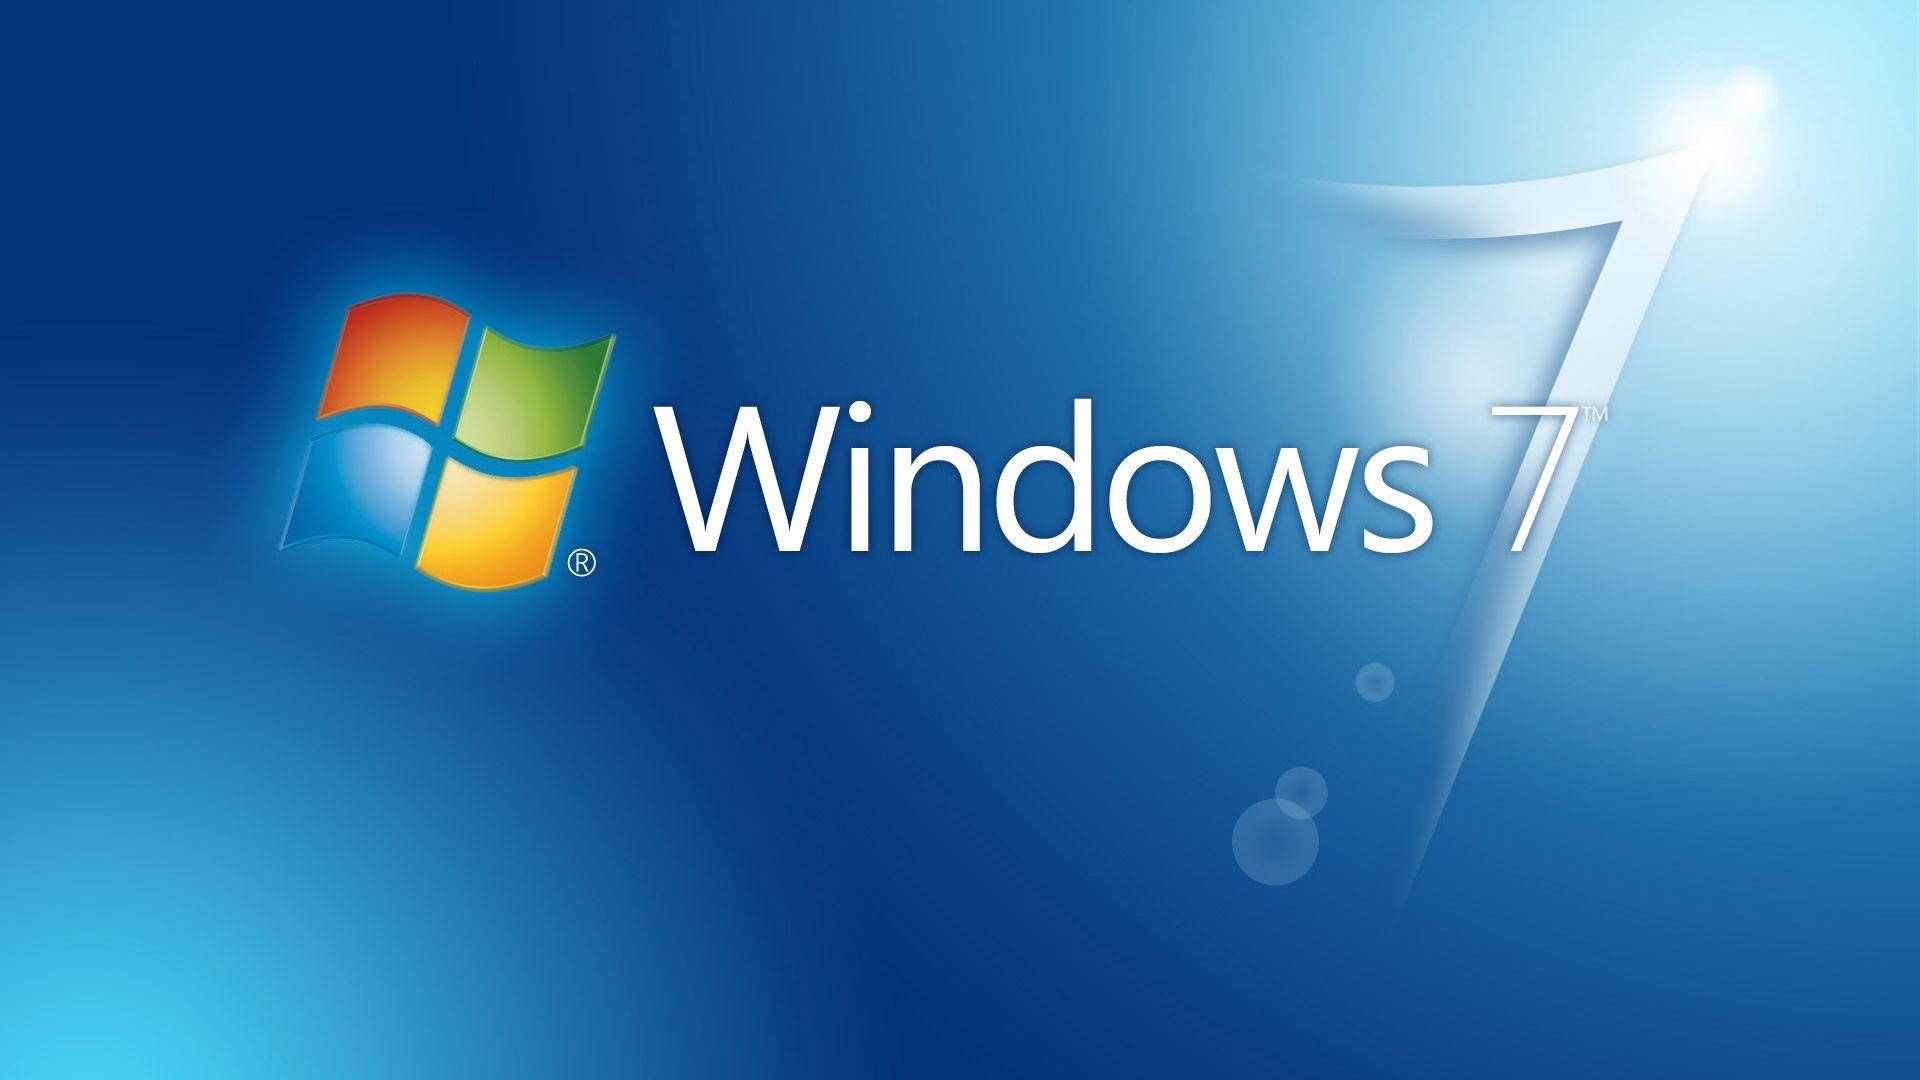 Gambar Windows 7 Gambar Windows 7 Hd - KibrisPDR